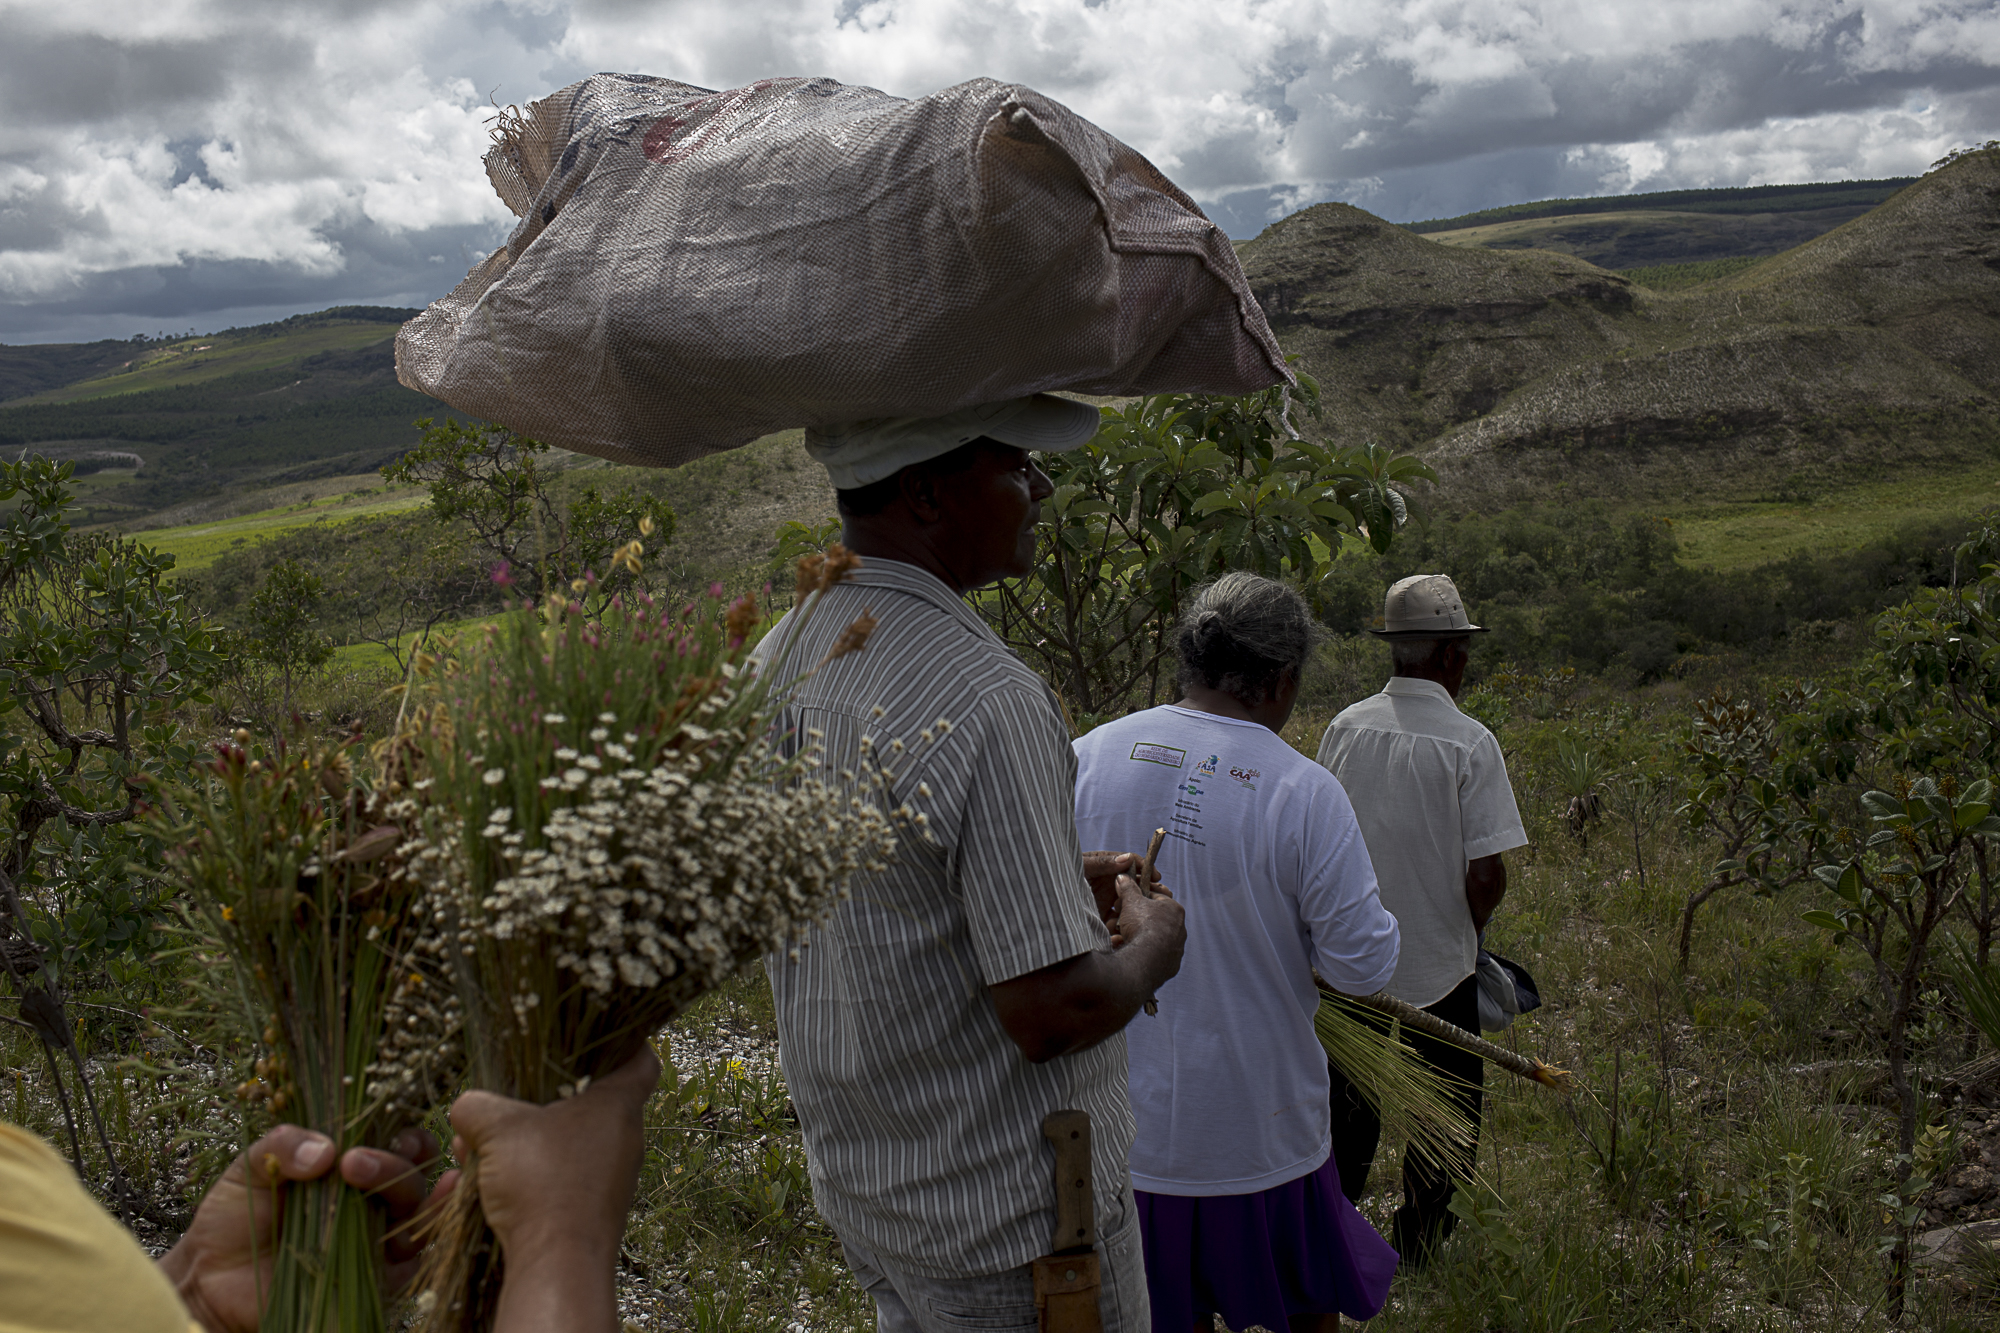 Panha de flores sempre-vivas na comunidade tradicional de Raiz. Foto: Valda Nogueira